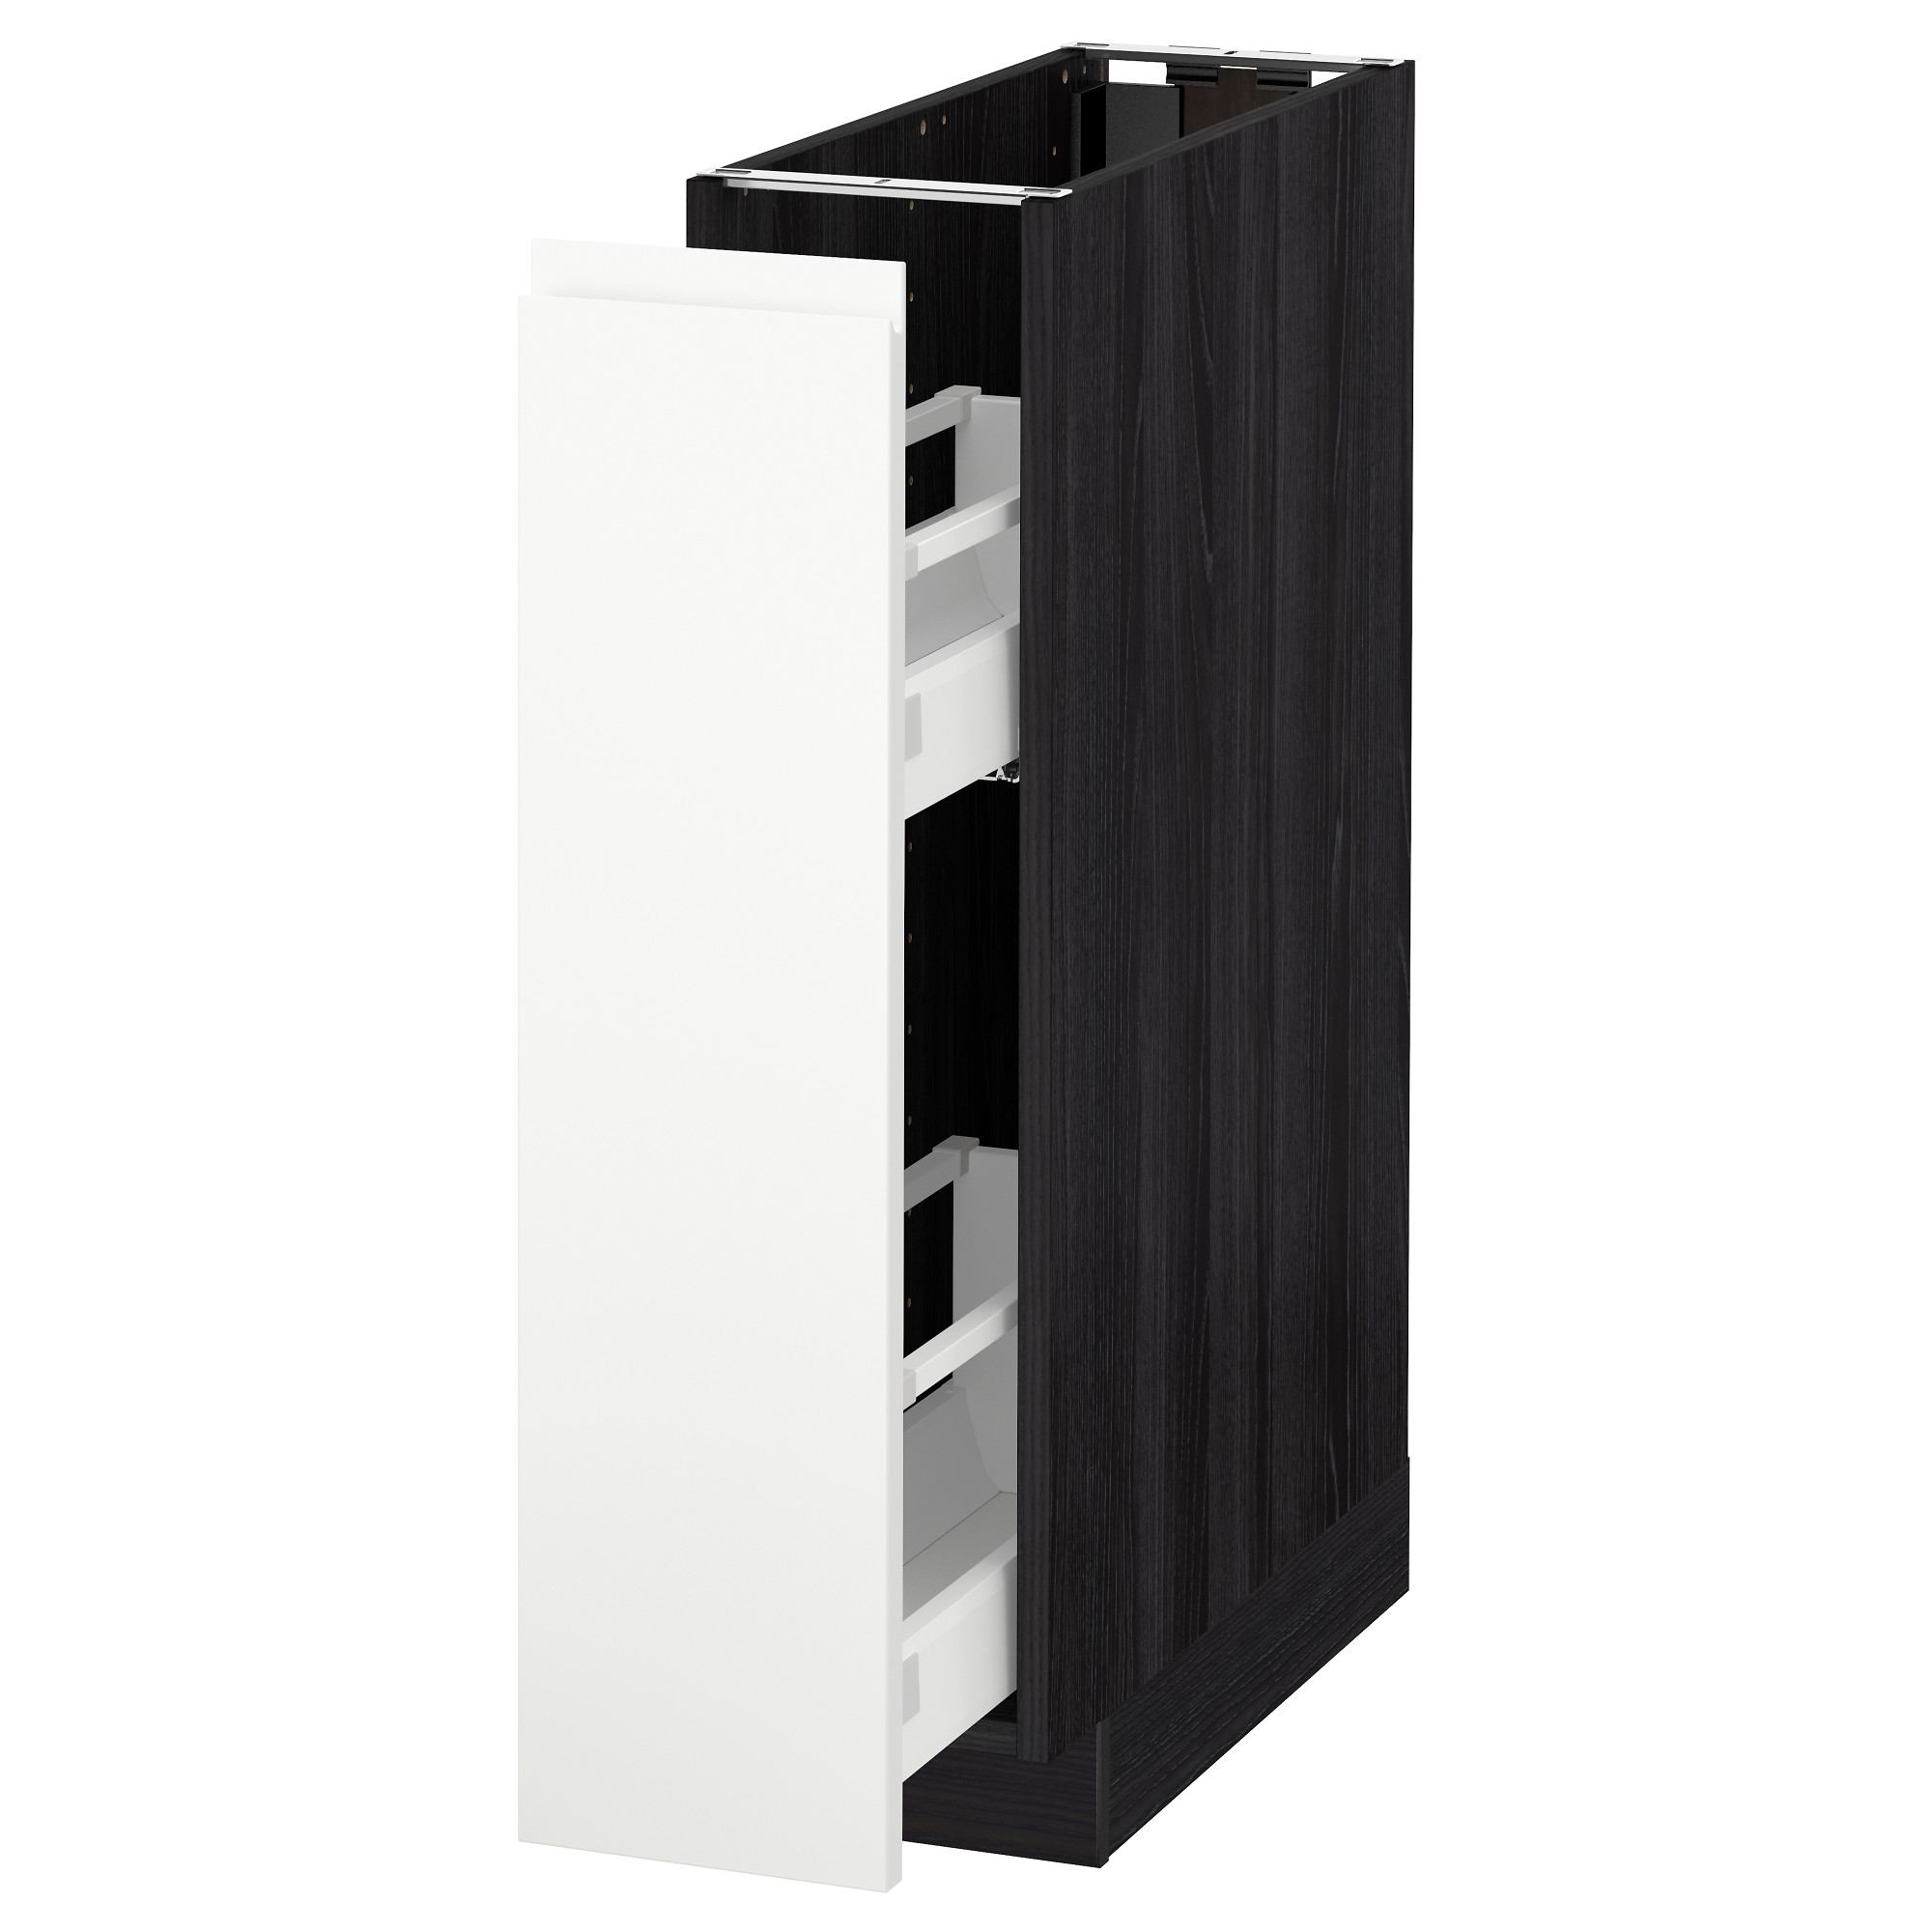 Напольный шкаф, выдвижной внутри элементы, 20x60 см, черный, Voxtorp белый IKEA METOD МЕТОД 091.661.52 купить в Минске, цена